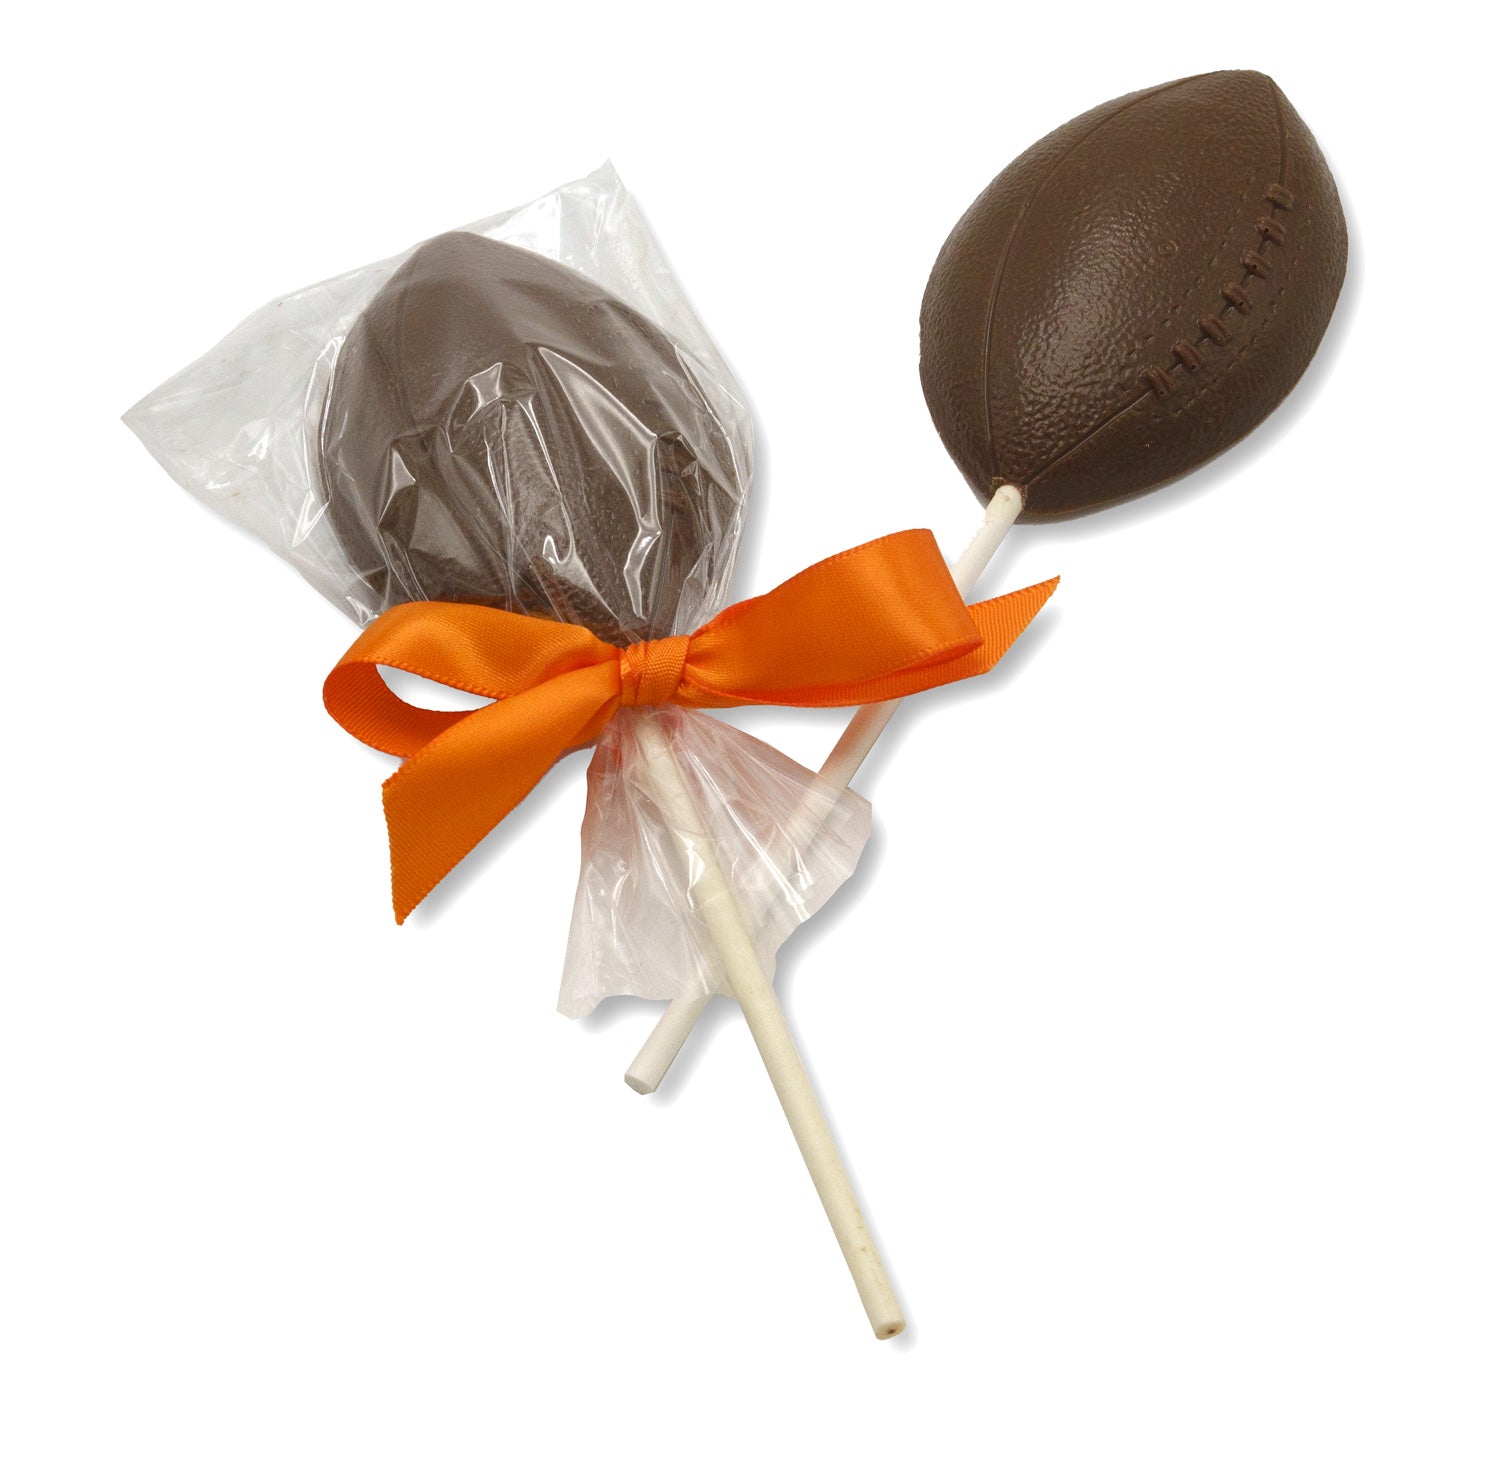 Milk chocolate lollipop shaped like a football